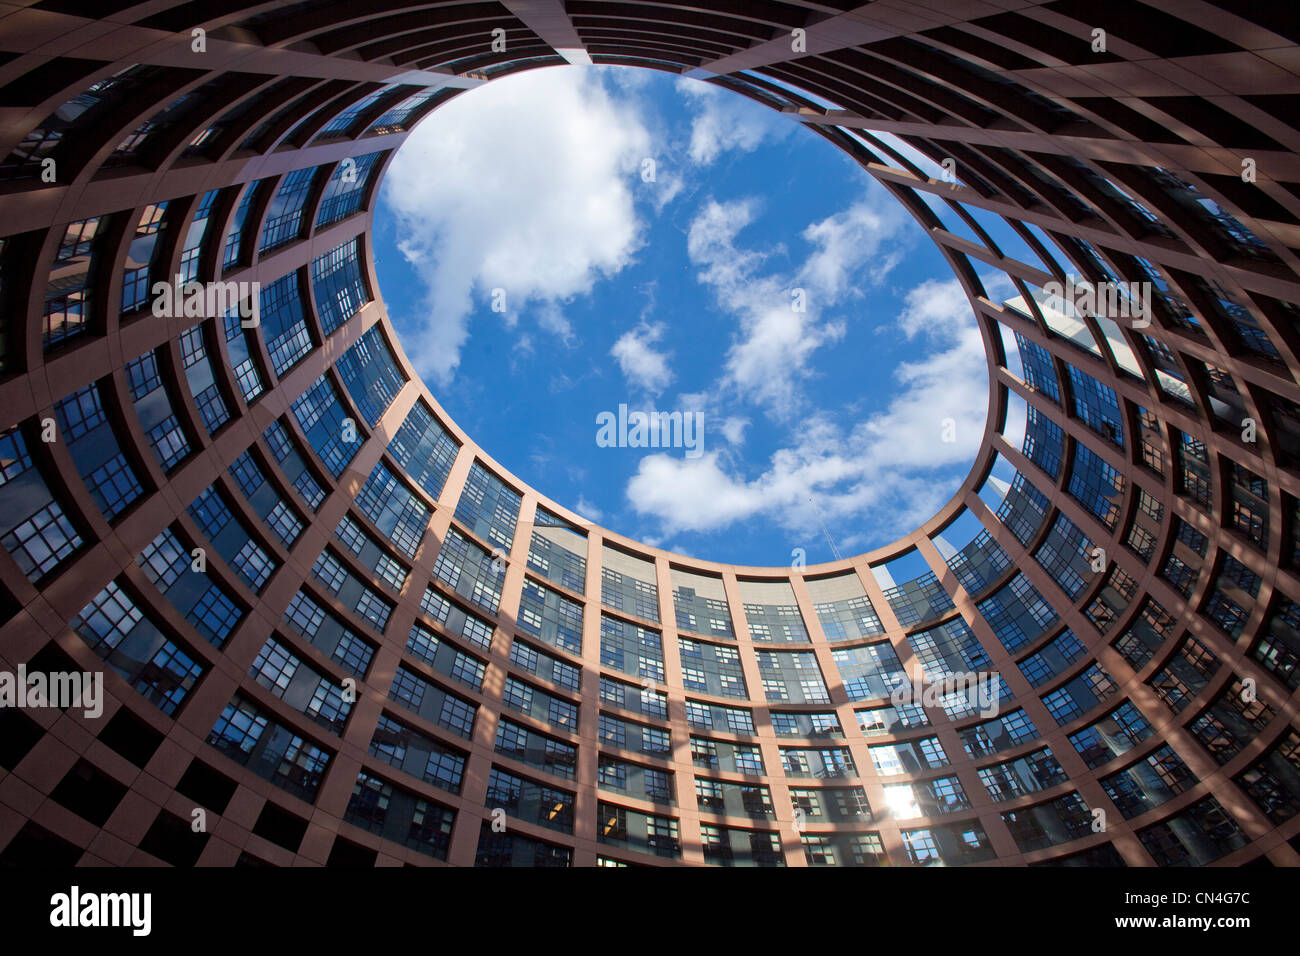 Frankreich, Bas Rhin, Straßburg, europäische Institution Bezirk oder Europaviertel, das Europäische Parlament von der Architektur Stockfoto